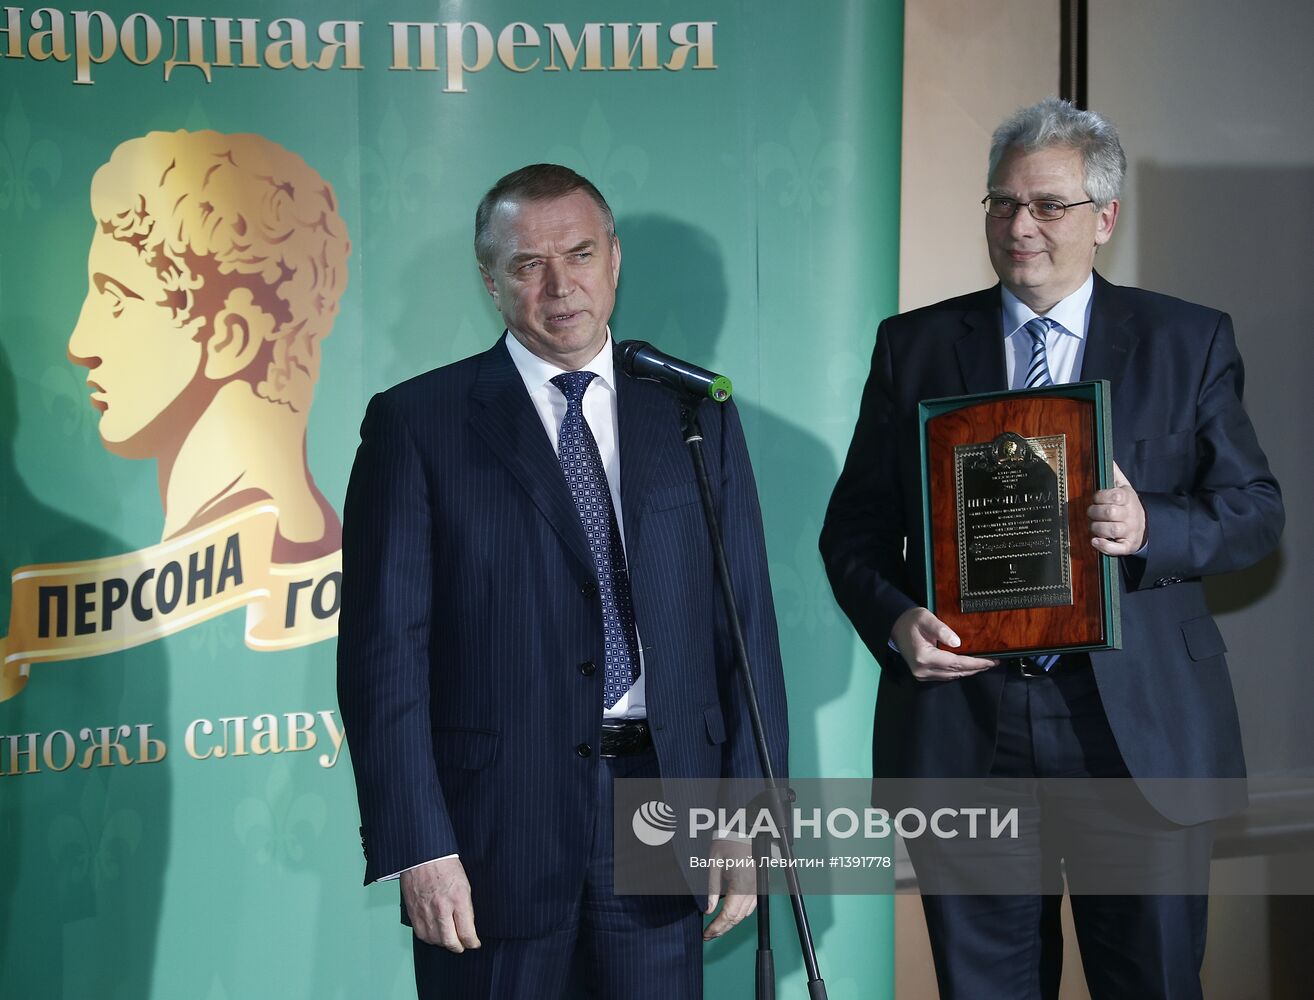 Международная премия "Персона года 2012"